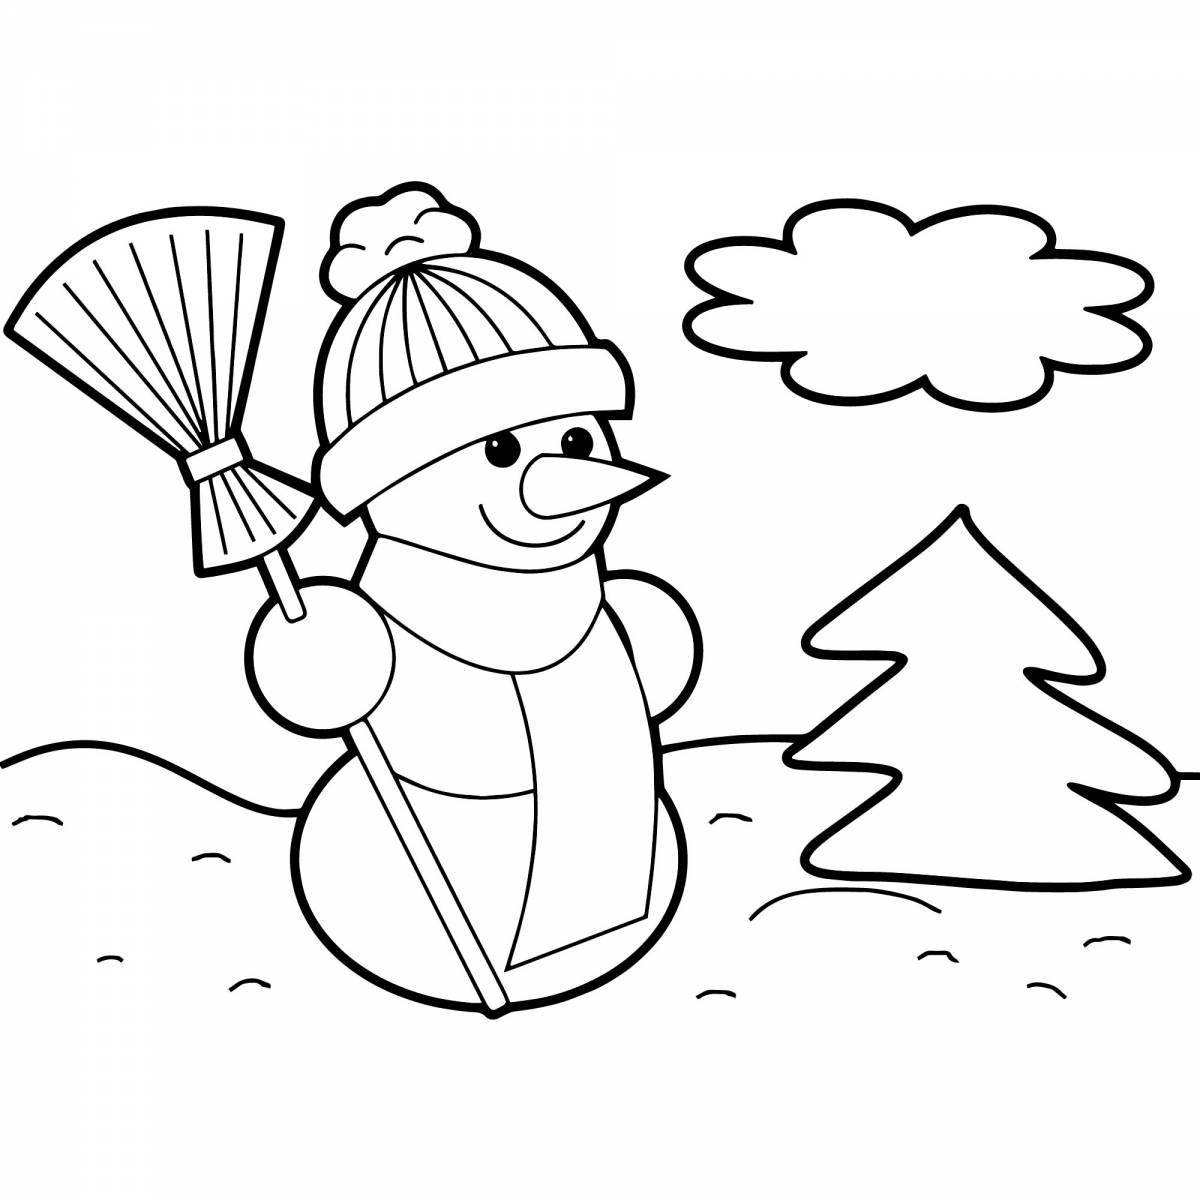 Фото Веселые снеговики в узорчатых шапках и шарфах